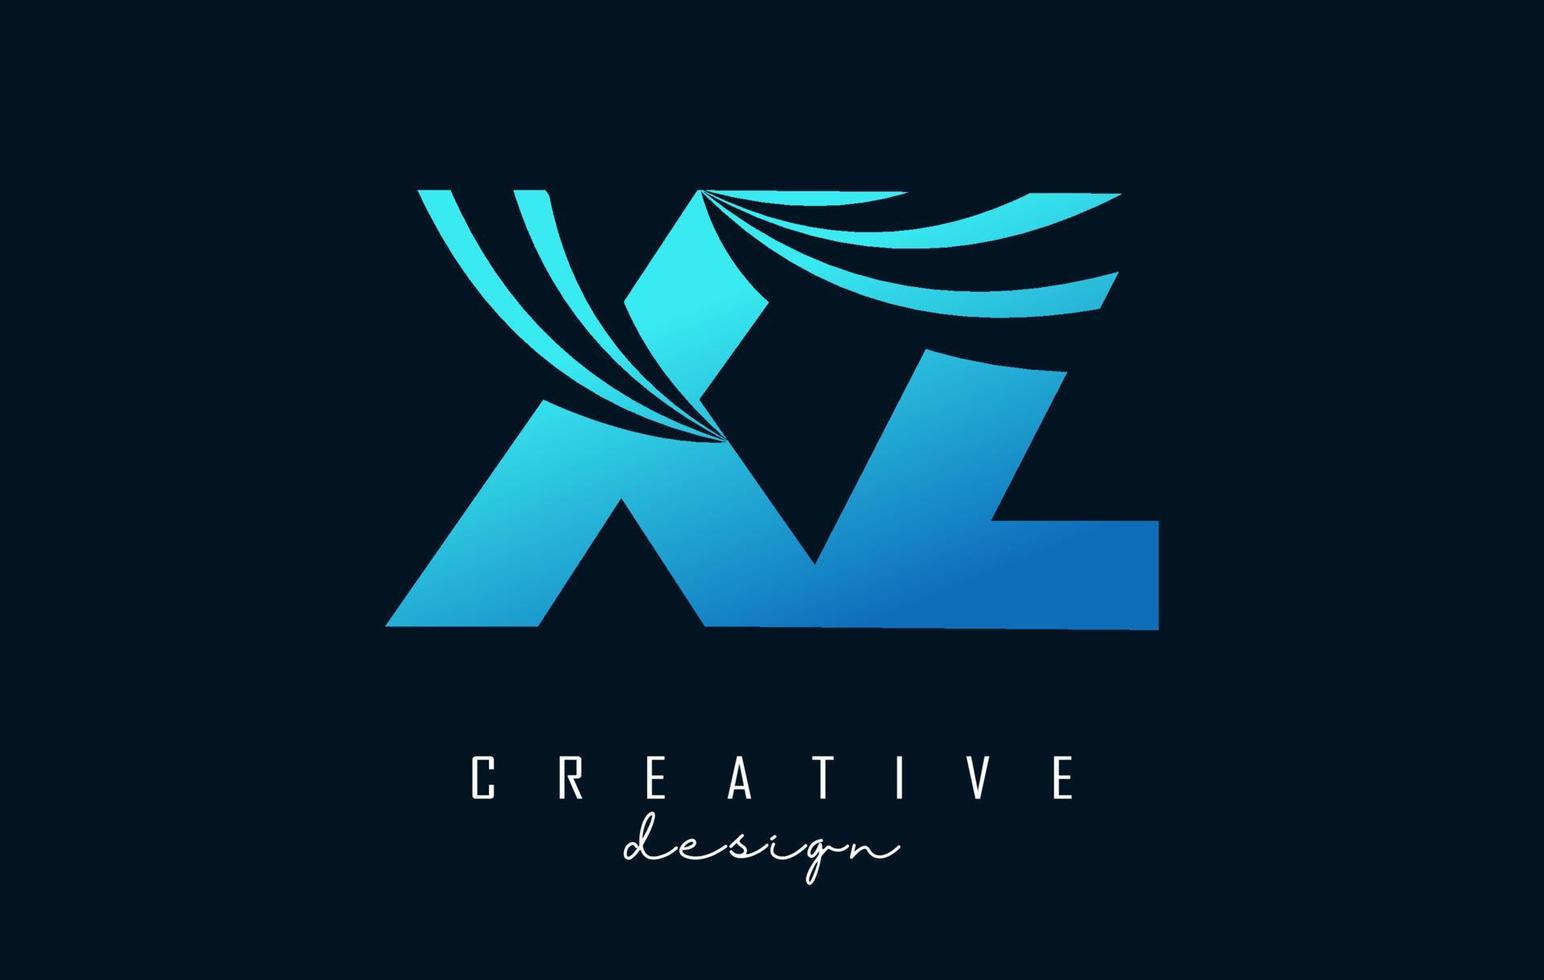 kreativa blå bokstäver xz xz logotyp med ledande linjer och vägkonceptdesign. bokstäver med geometrisk design. vektor